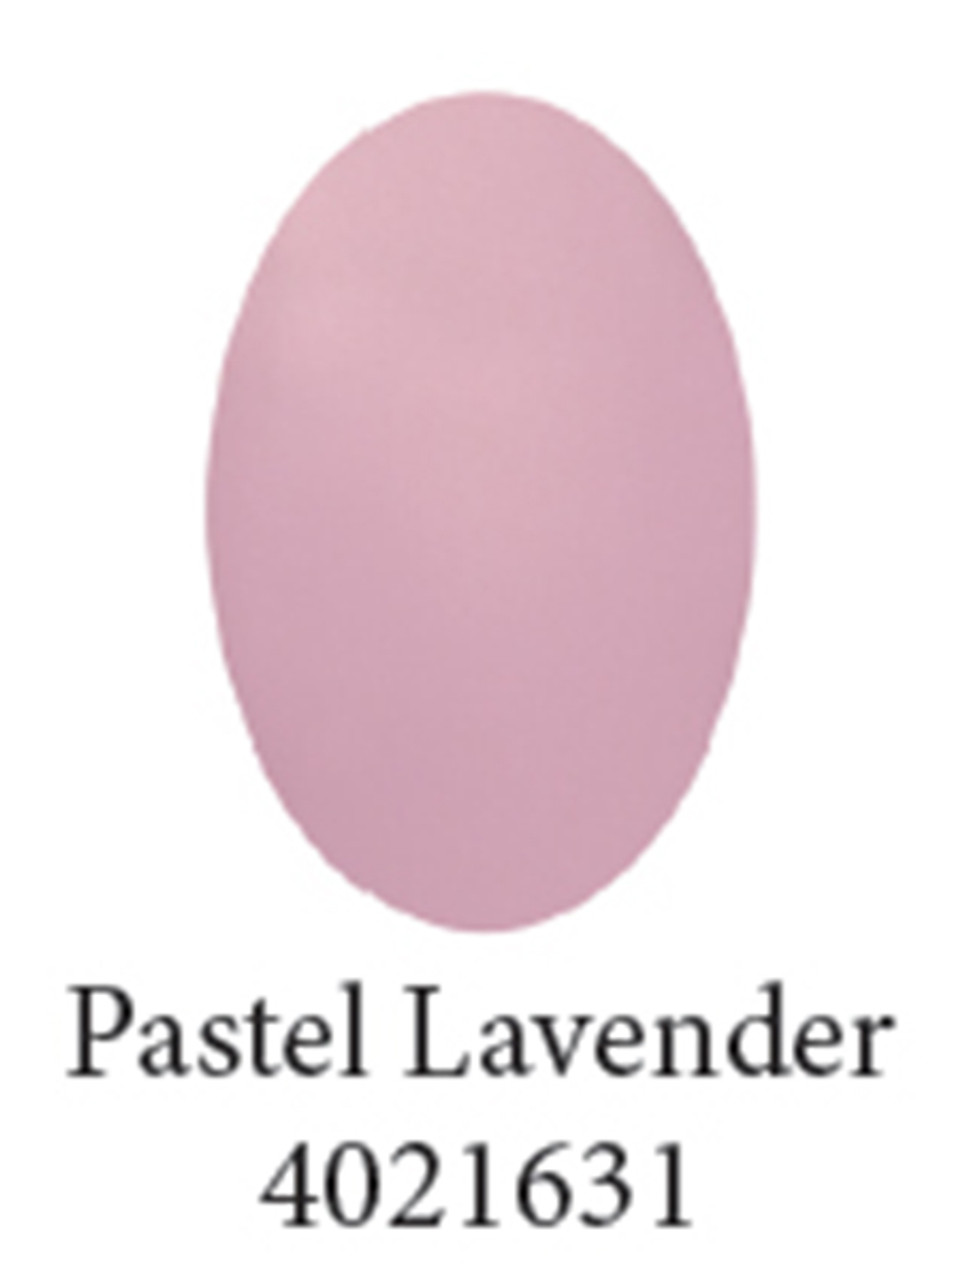 U2 PASTEL Color Powder - Lavender